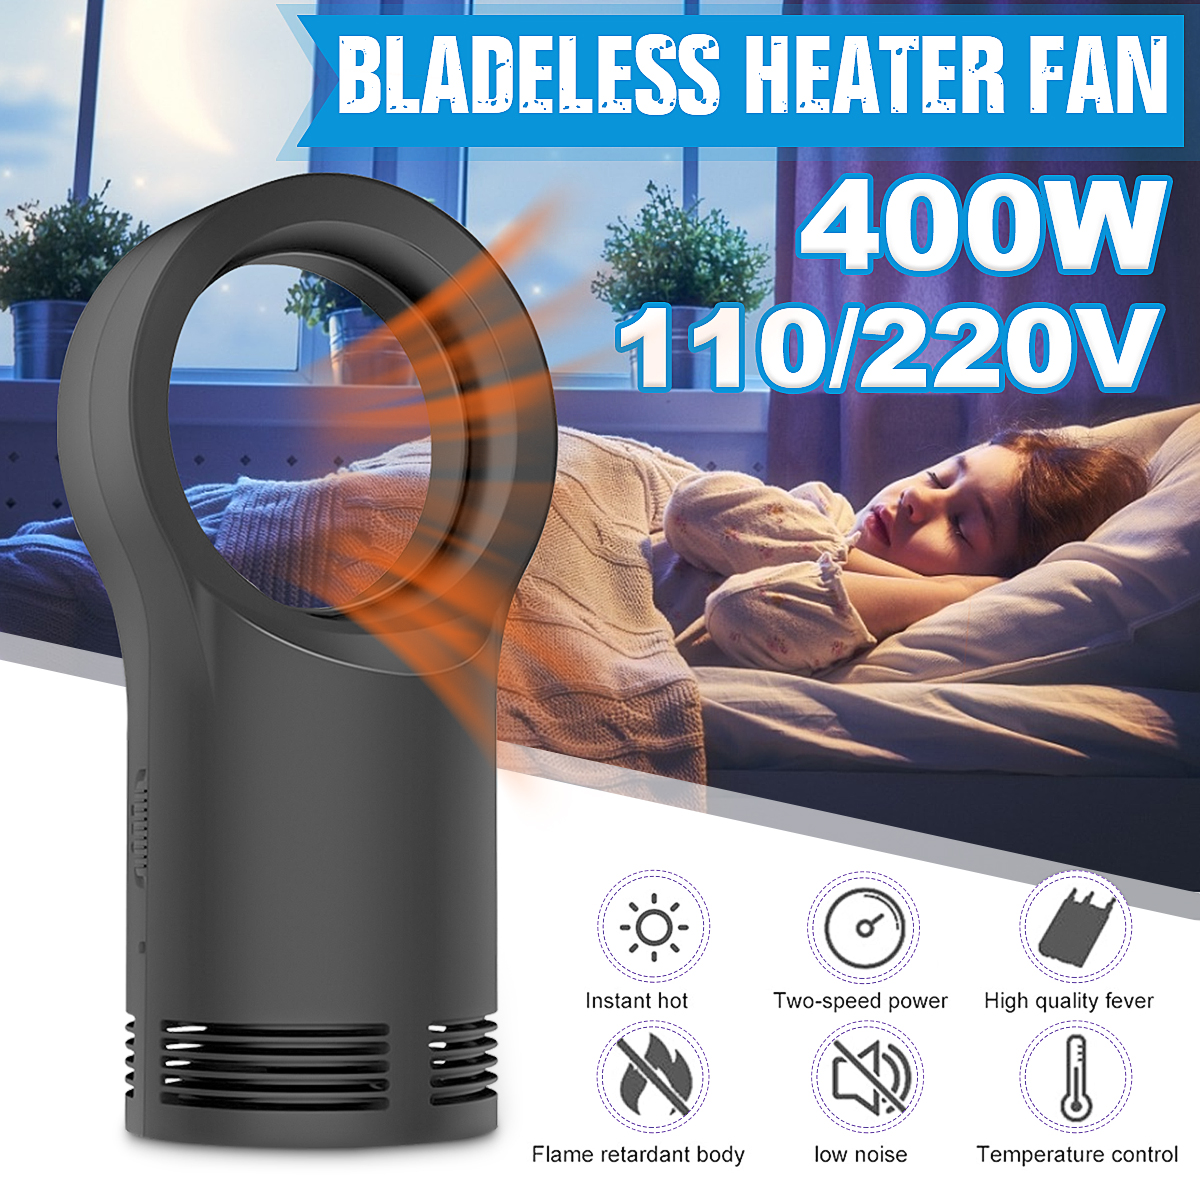 Bladeless-Heater-Fan-Desktop-Table-Electric-Heating-Winter-Warm-Fan-Space-Air-Blower-Radiator-1614555-1